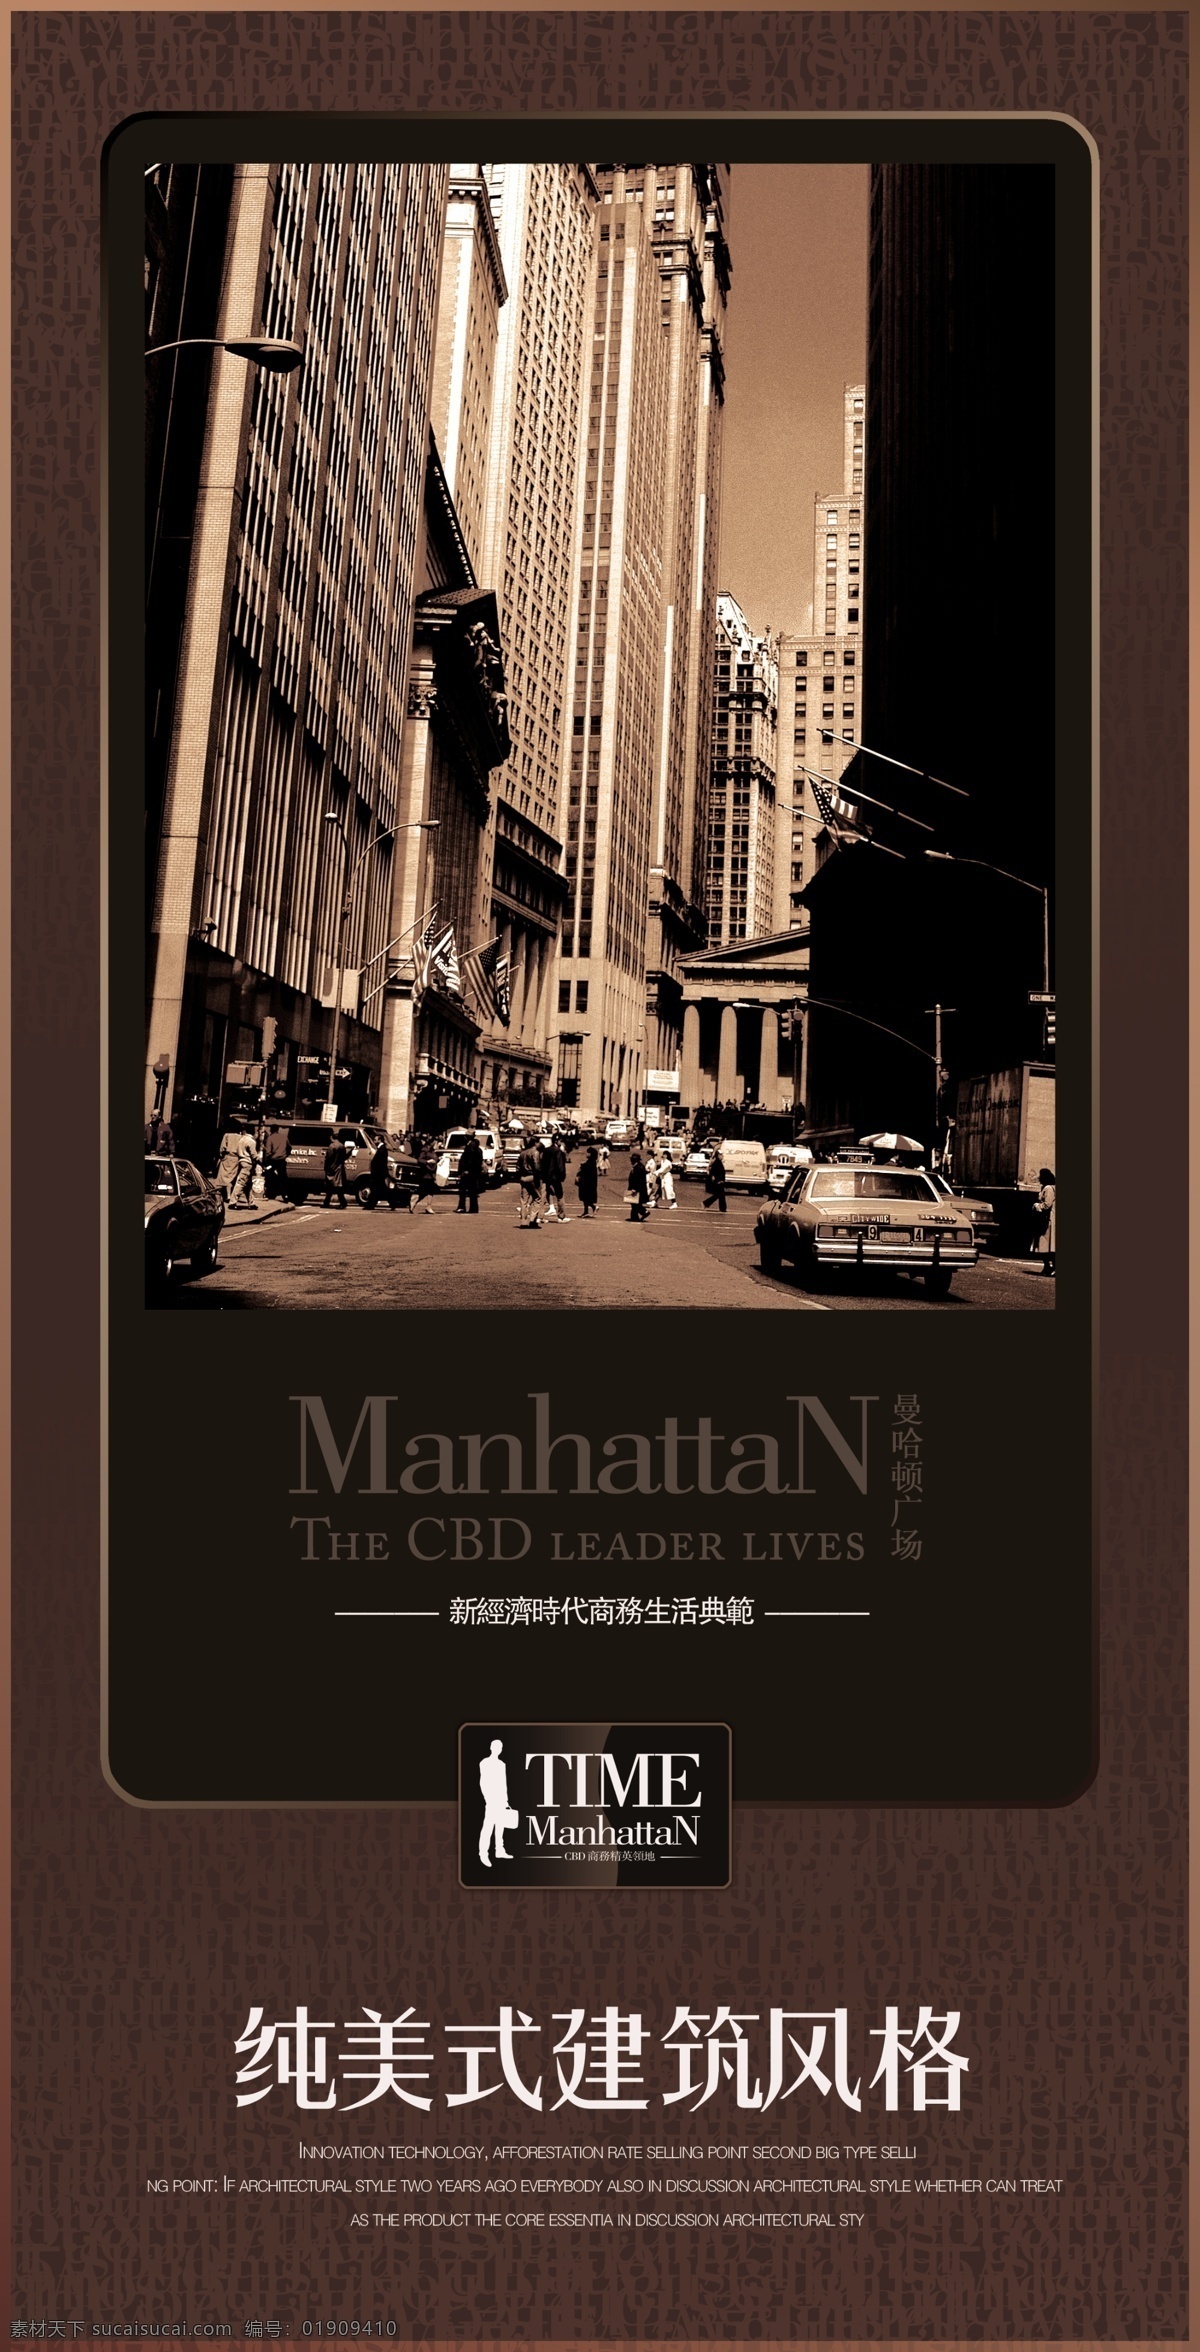 曼哈顿 路旗8 vi设计 宣传画册 分层psd vi模板 折页画册 画册模板 形象识别 设计素材 vi手册模板 平面设计 黑色